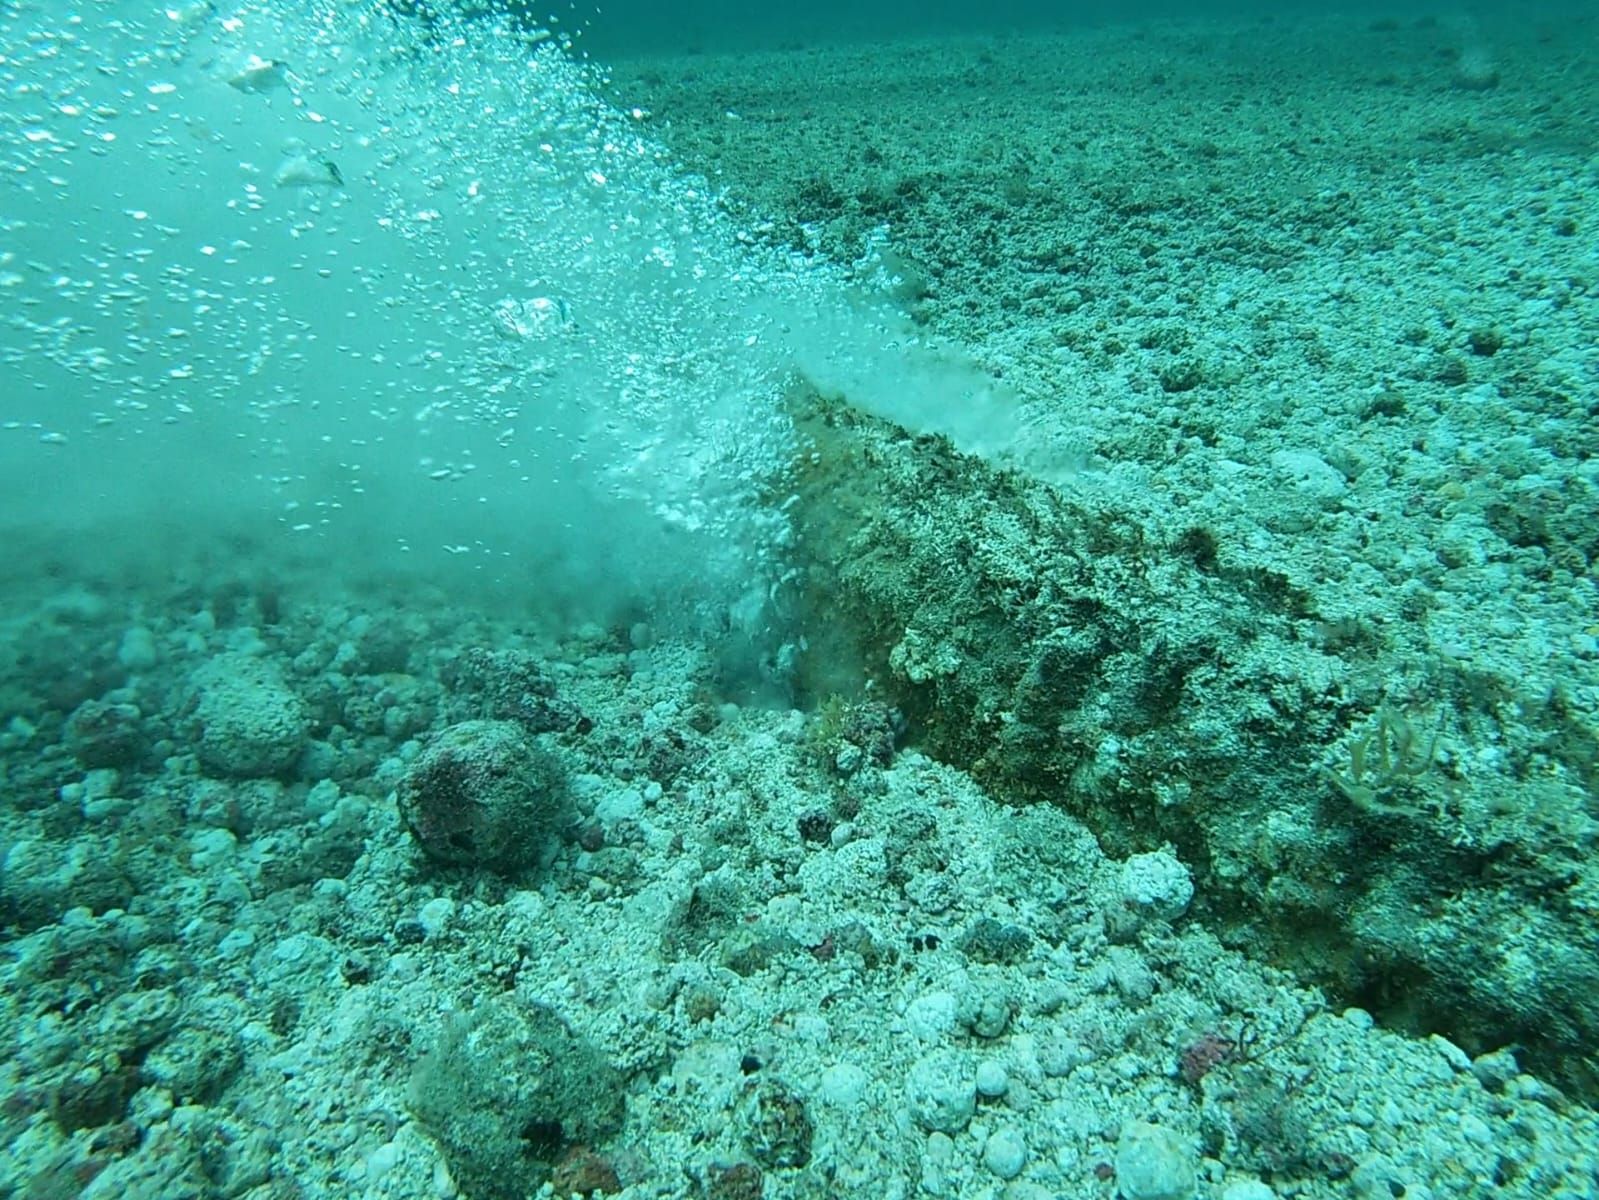 Reparación de la tubería submarina de agua potable entre Lanzarote y La Graciosa